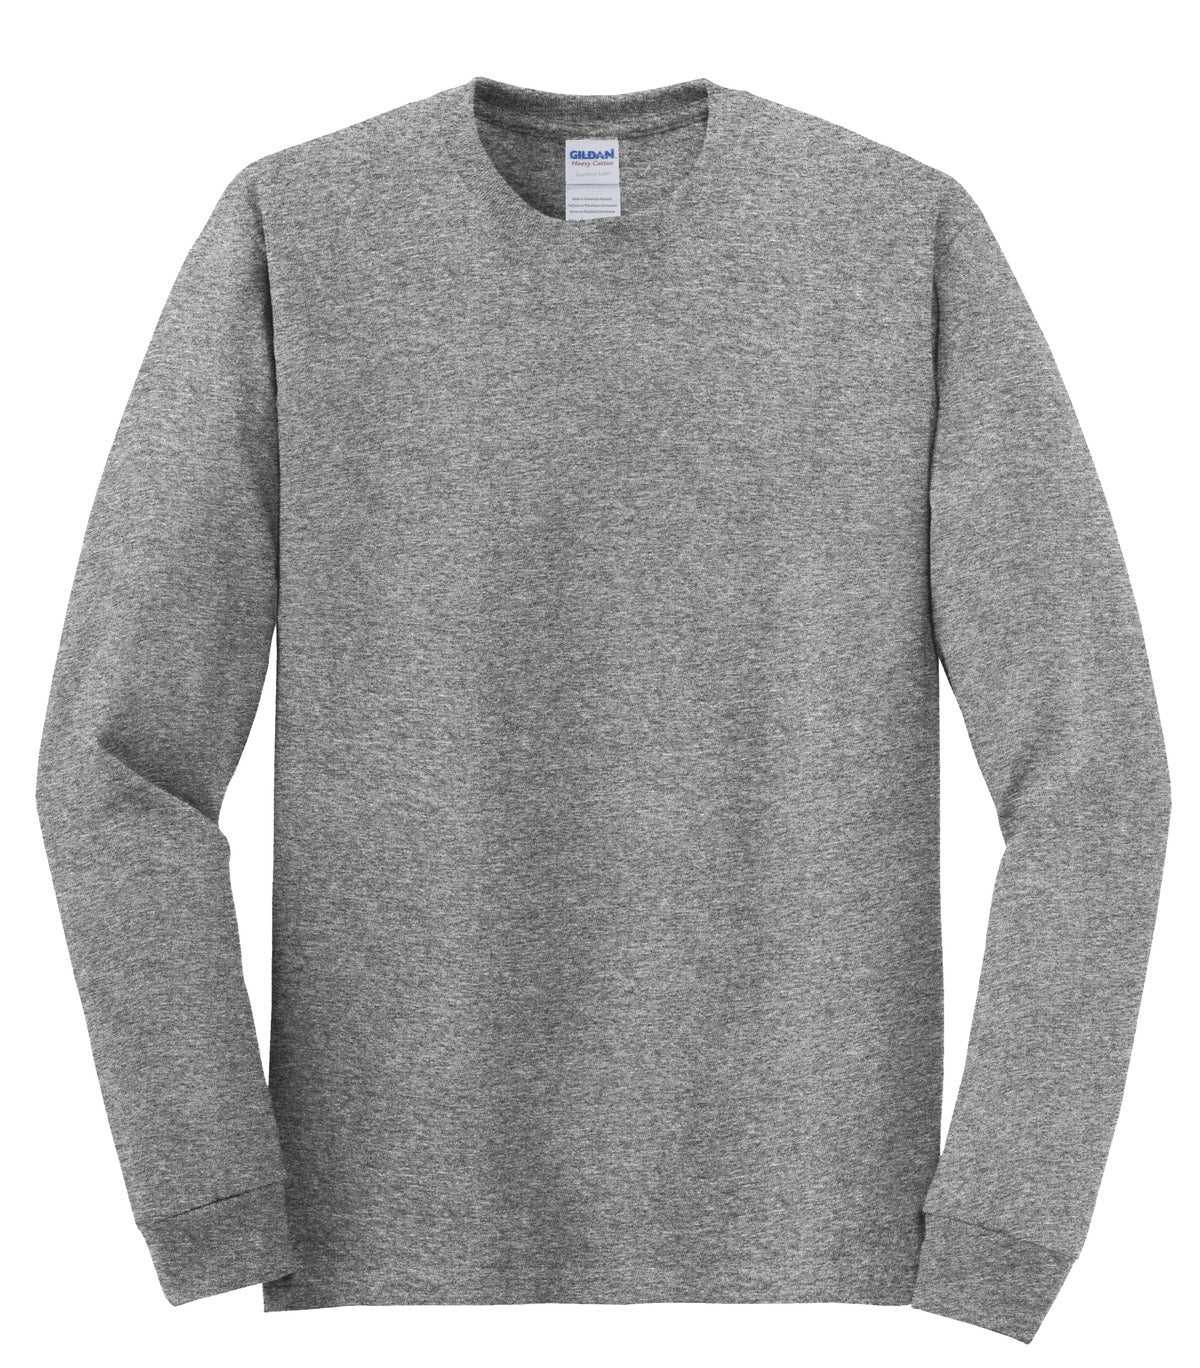 Gildan 5400 Heavy Cotton 100% Cotton Long Sleeve T-Shirt - Graphite Heather - HIT a Double